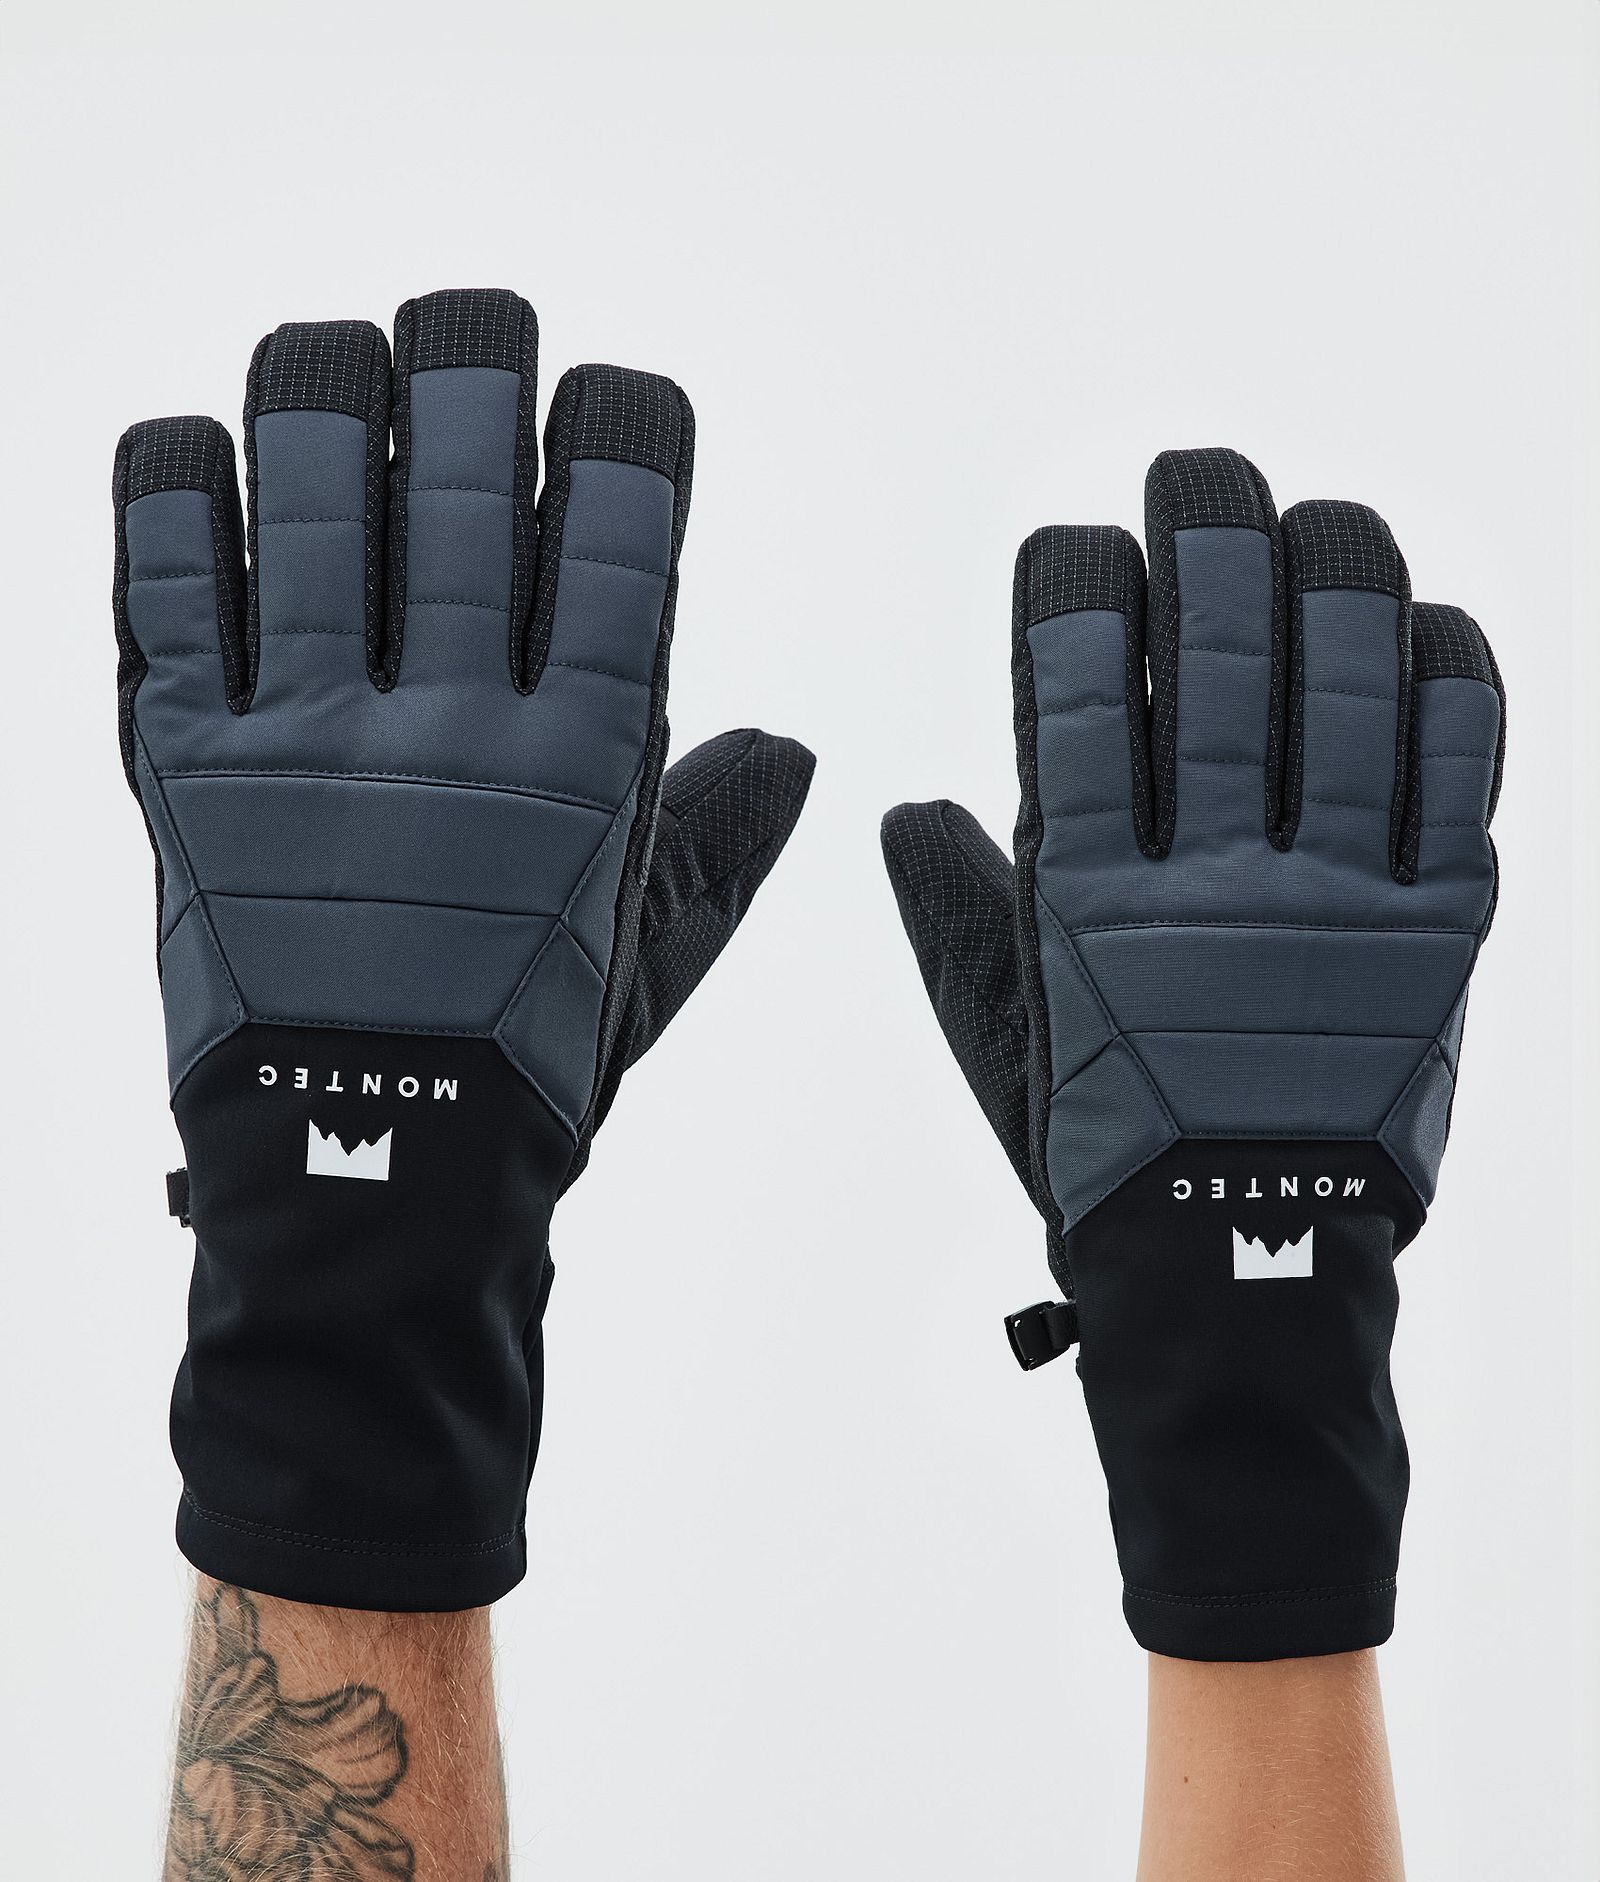 Kilo Ski Gloves Metal Blue, Image 1 of 5